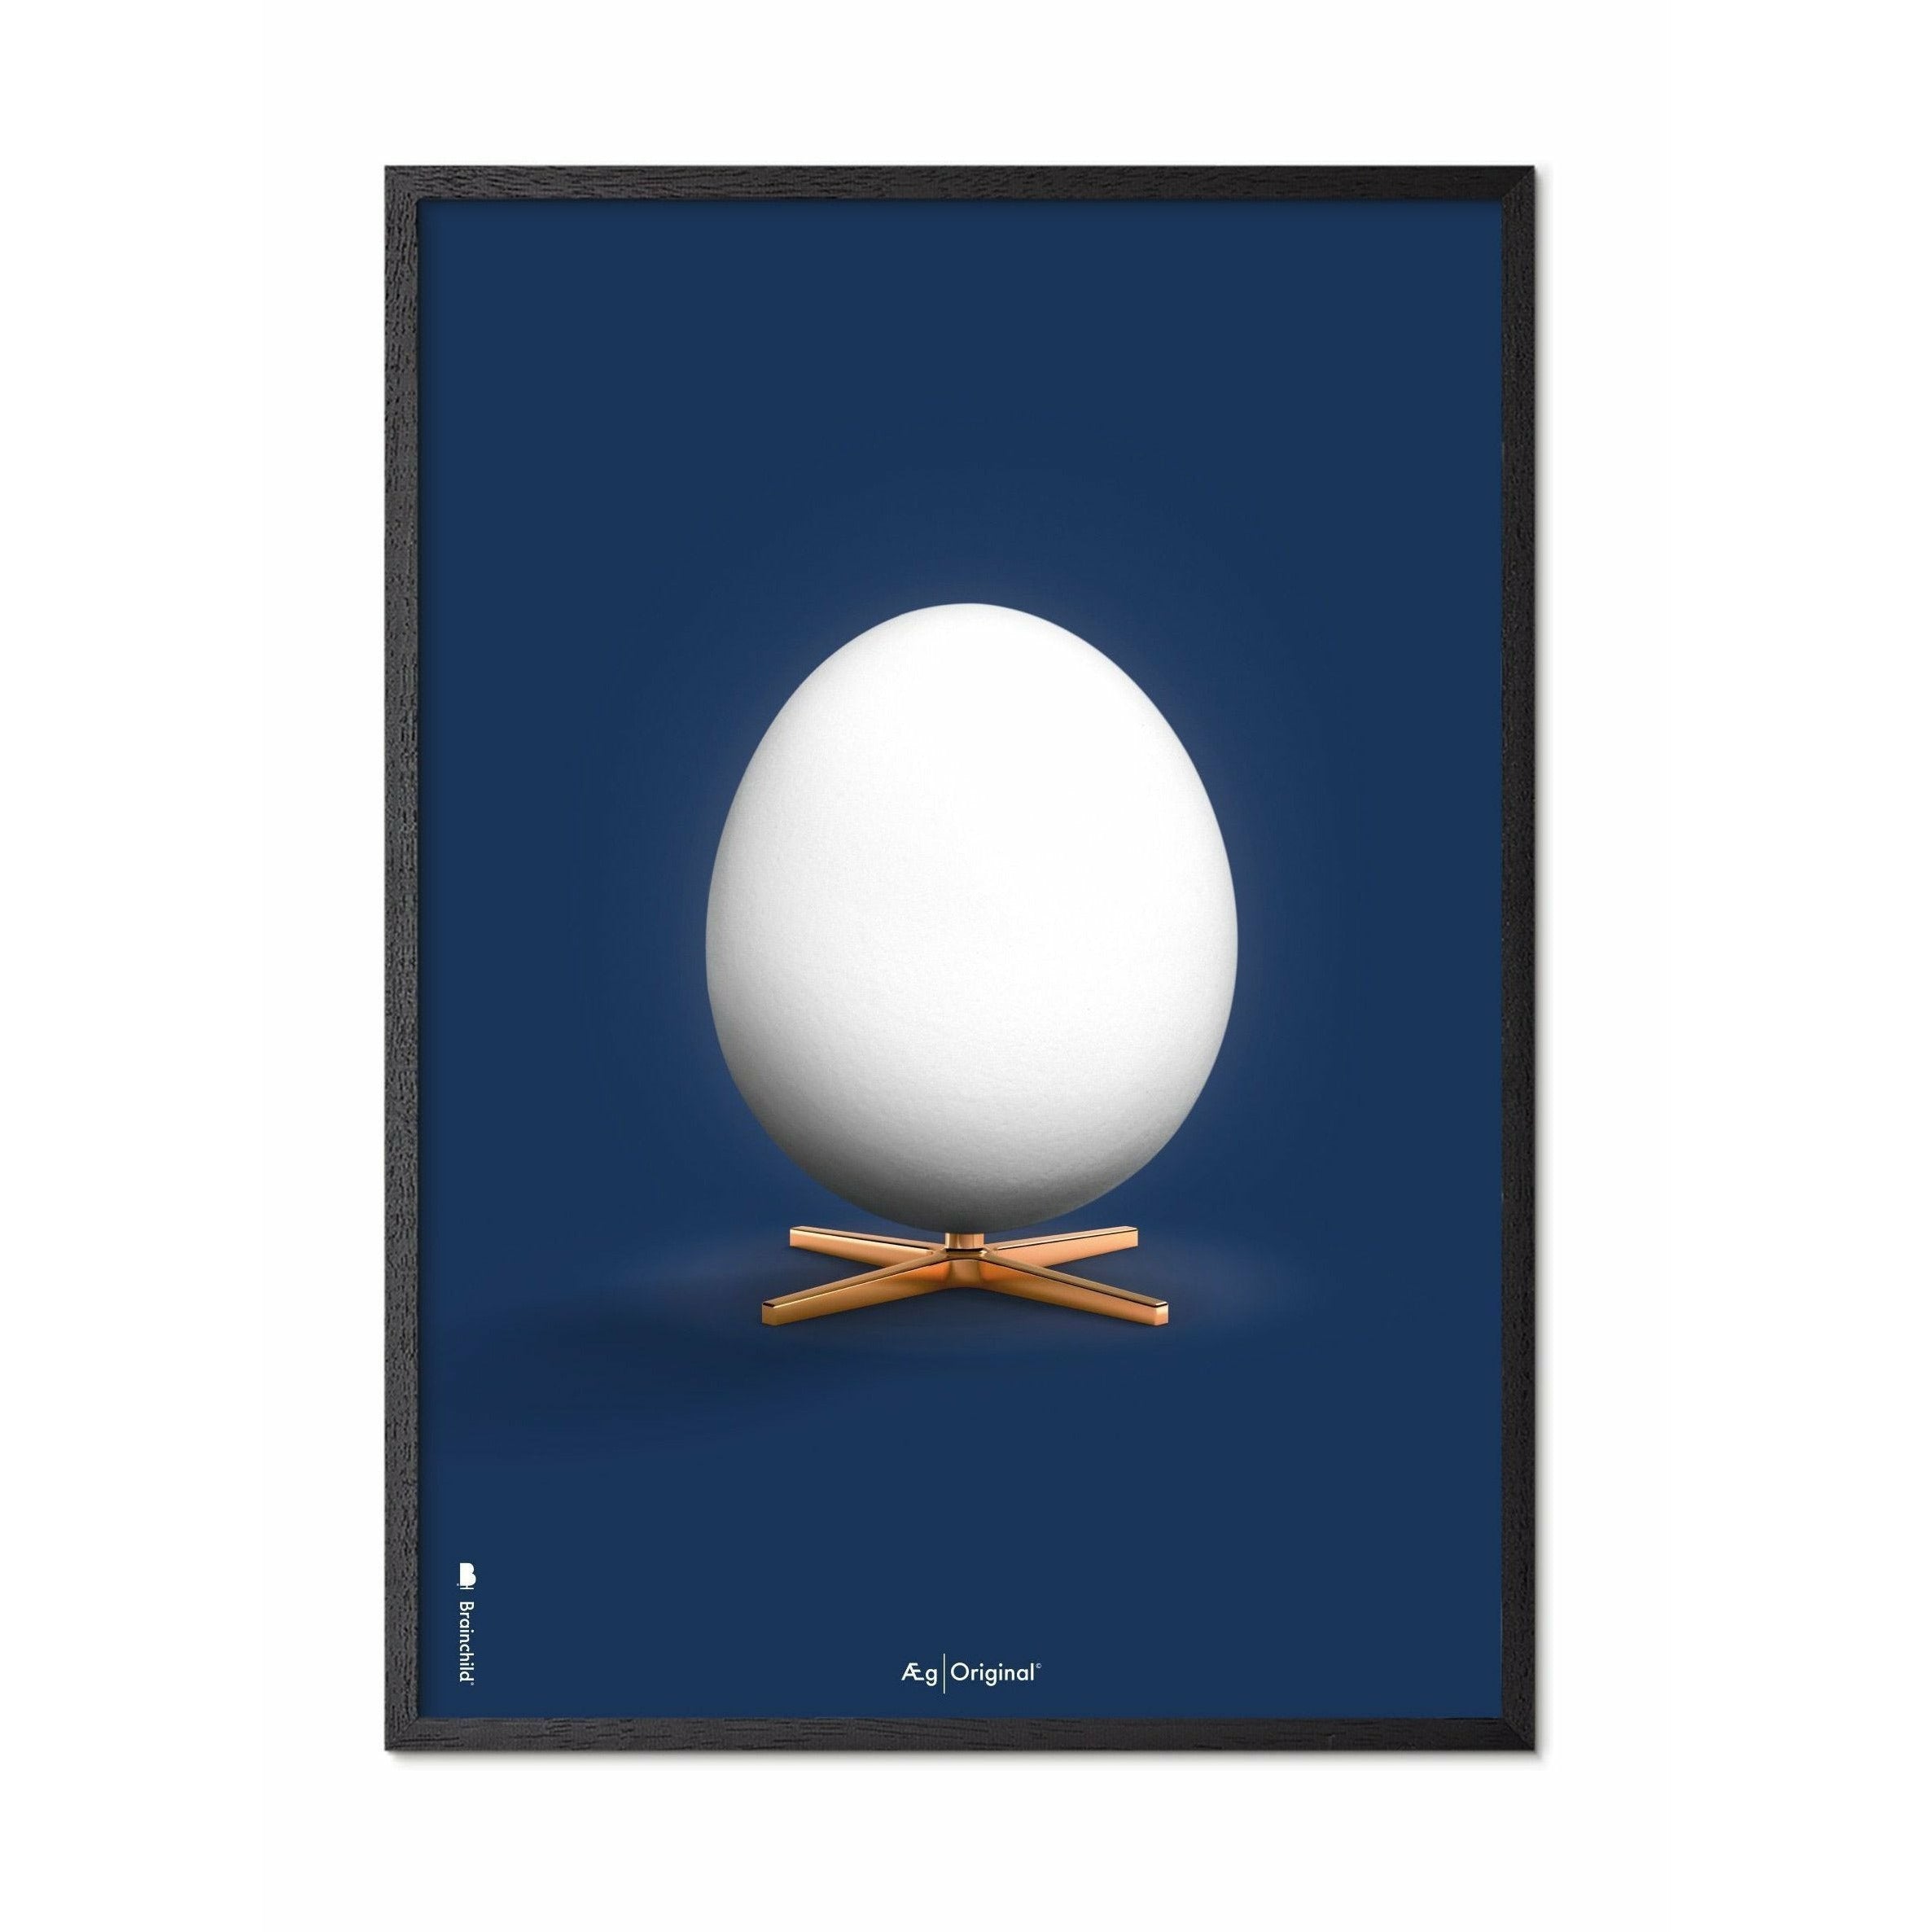 Póster clásico de huevo de creación, marco en madera lacada negra 50x70 cm, fondo azul oscuro